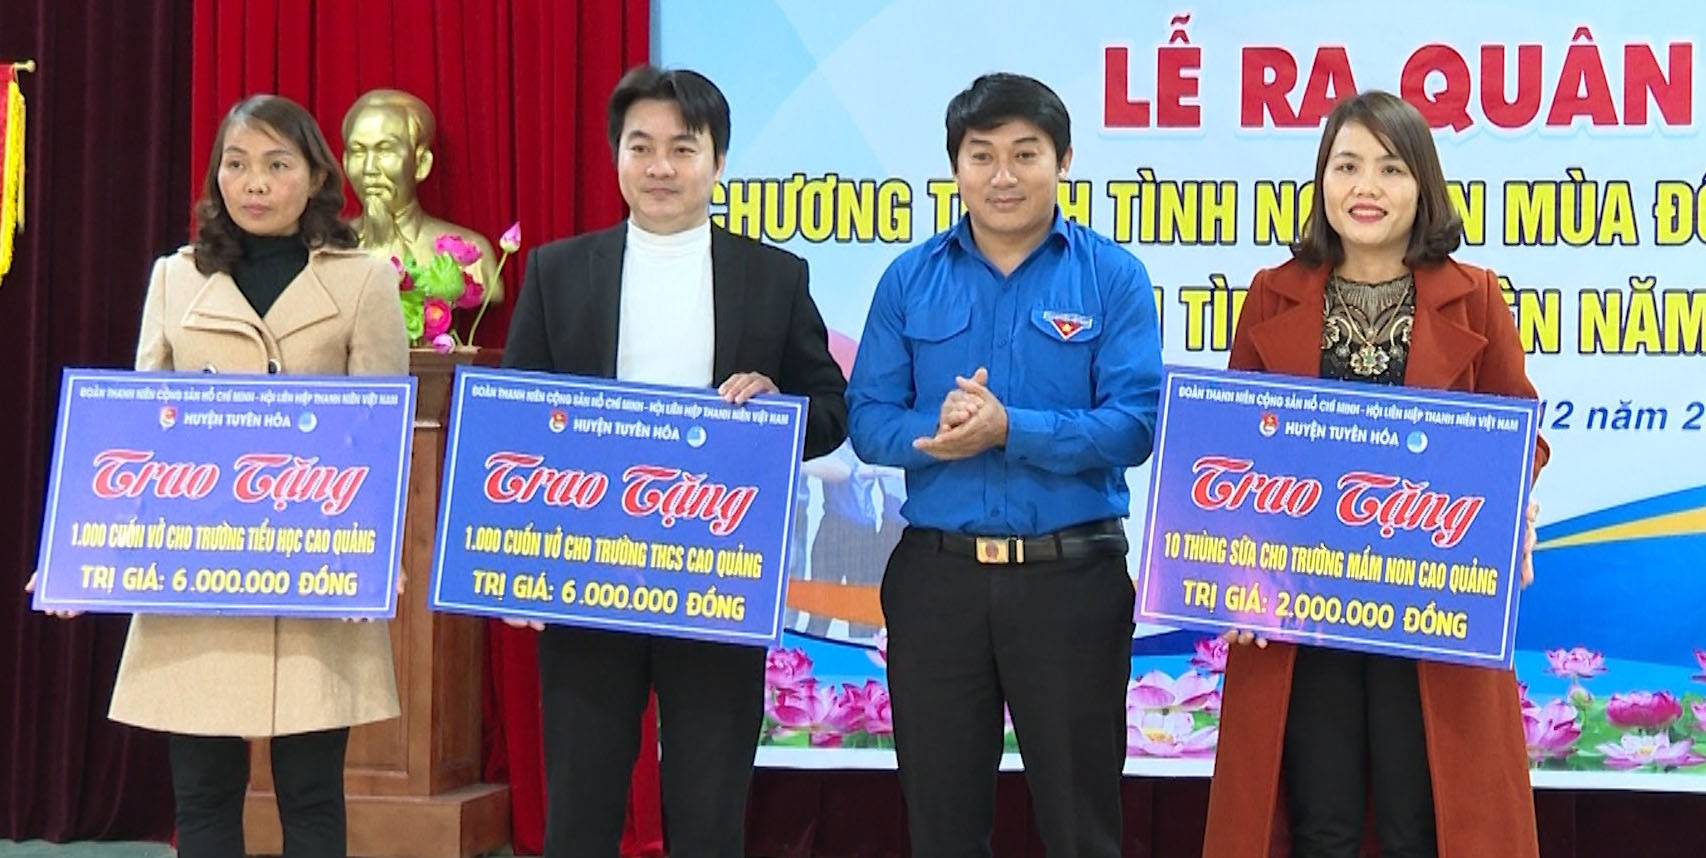 Nhiều hoạt động ý nghĩa vì cộng đồng do tuổi trẻ huyện Tuyên Hóa thực hiện.  